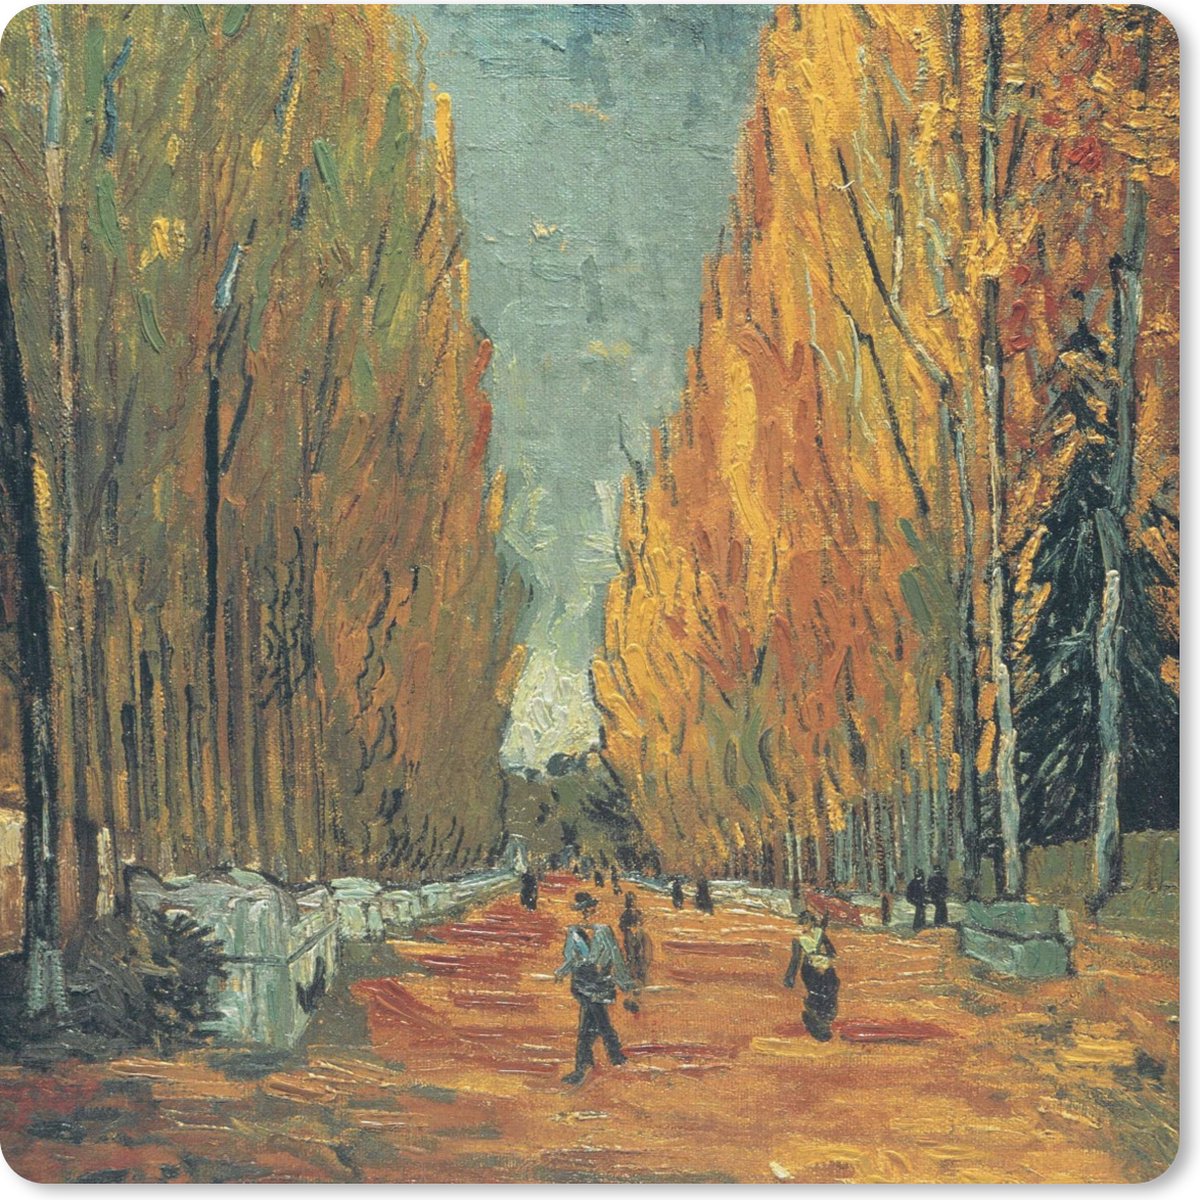 Muismat - Elysische velden - Vincent van Gogh - 20x20